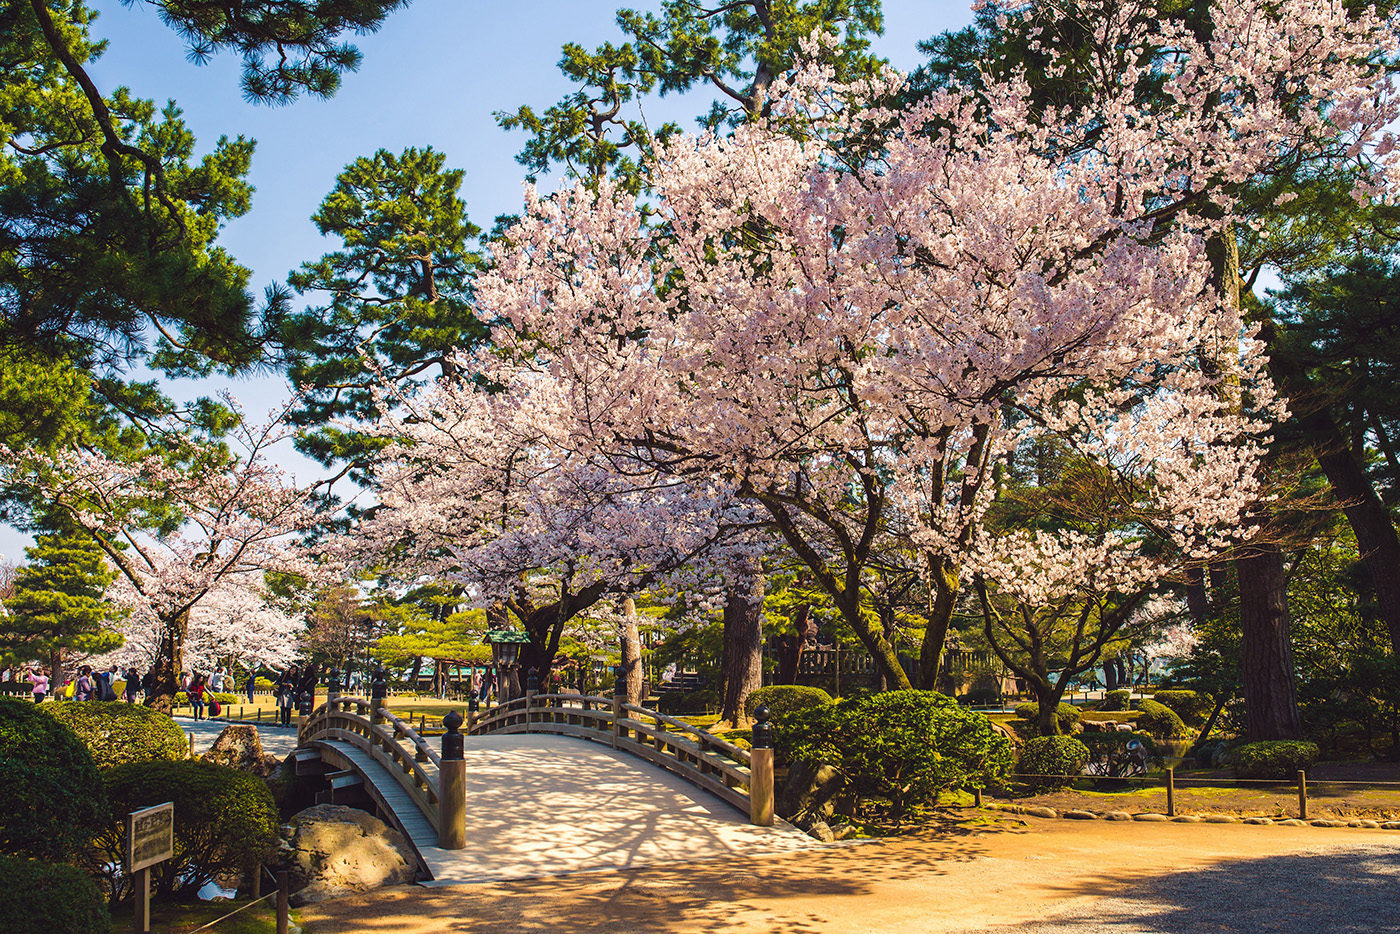 가나자와의 벚꽃 명소와 찻집, 오랜 세월을 느낄 수 있는 고목나무숲을 탐방해 보자